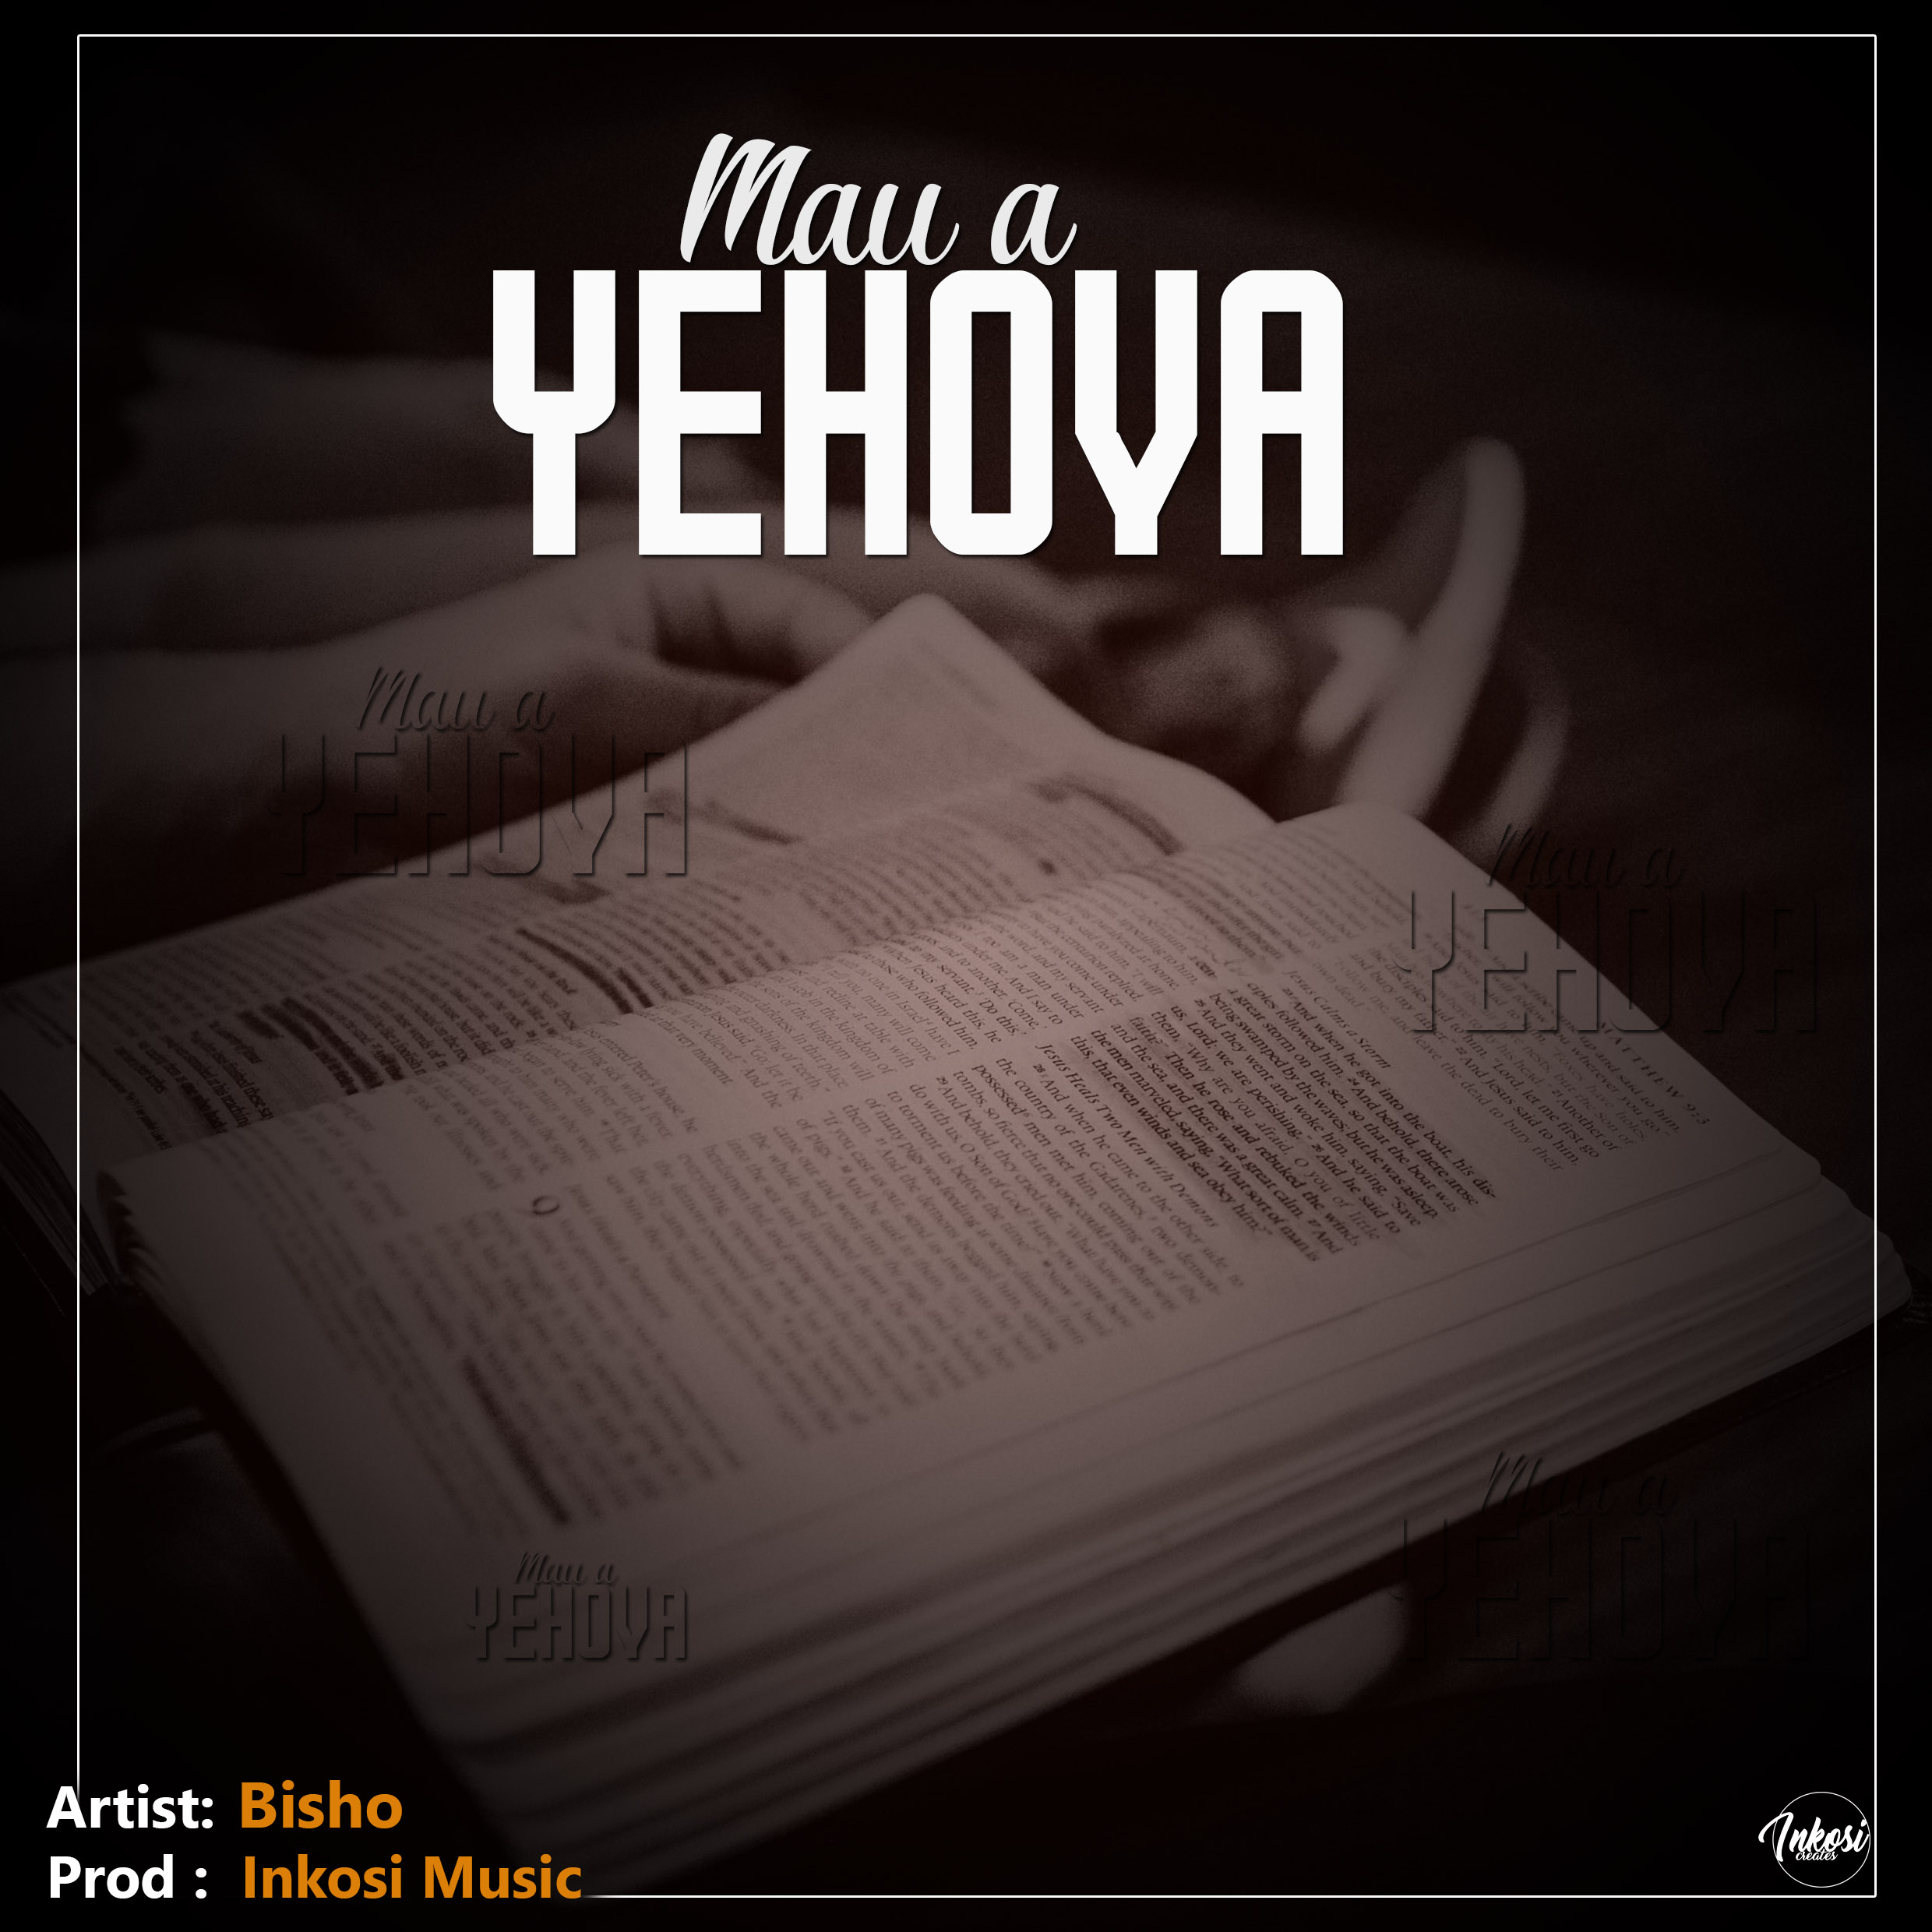  [Music Download] Bisho Mau A Yehova (Prod. EchoRino)